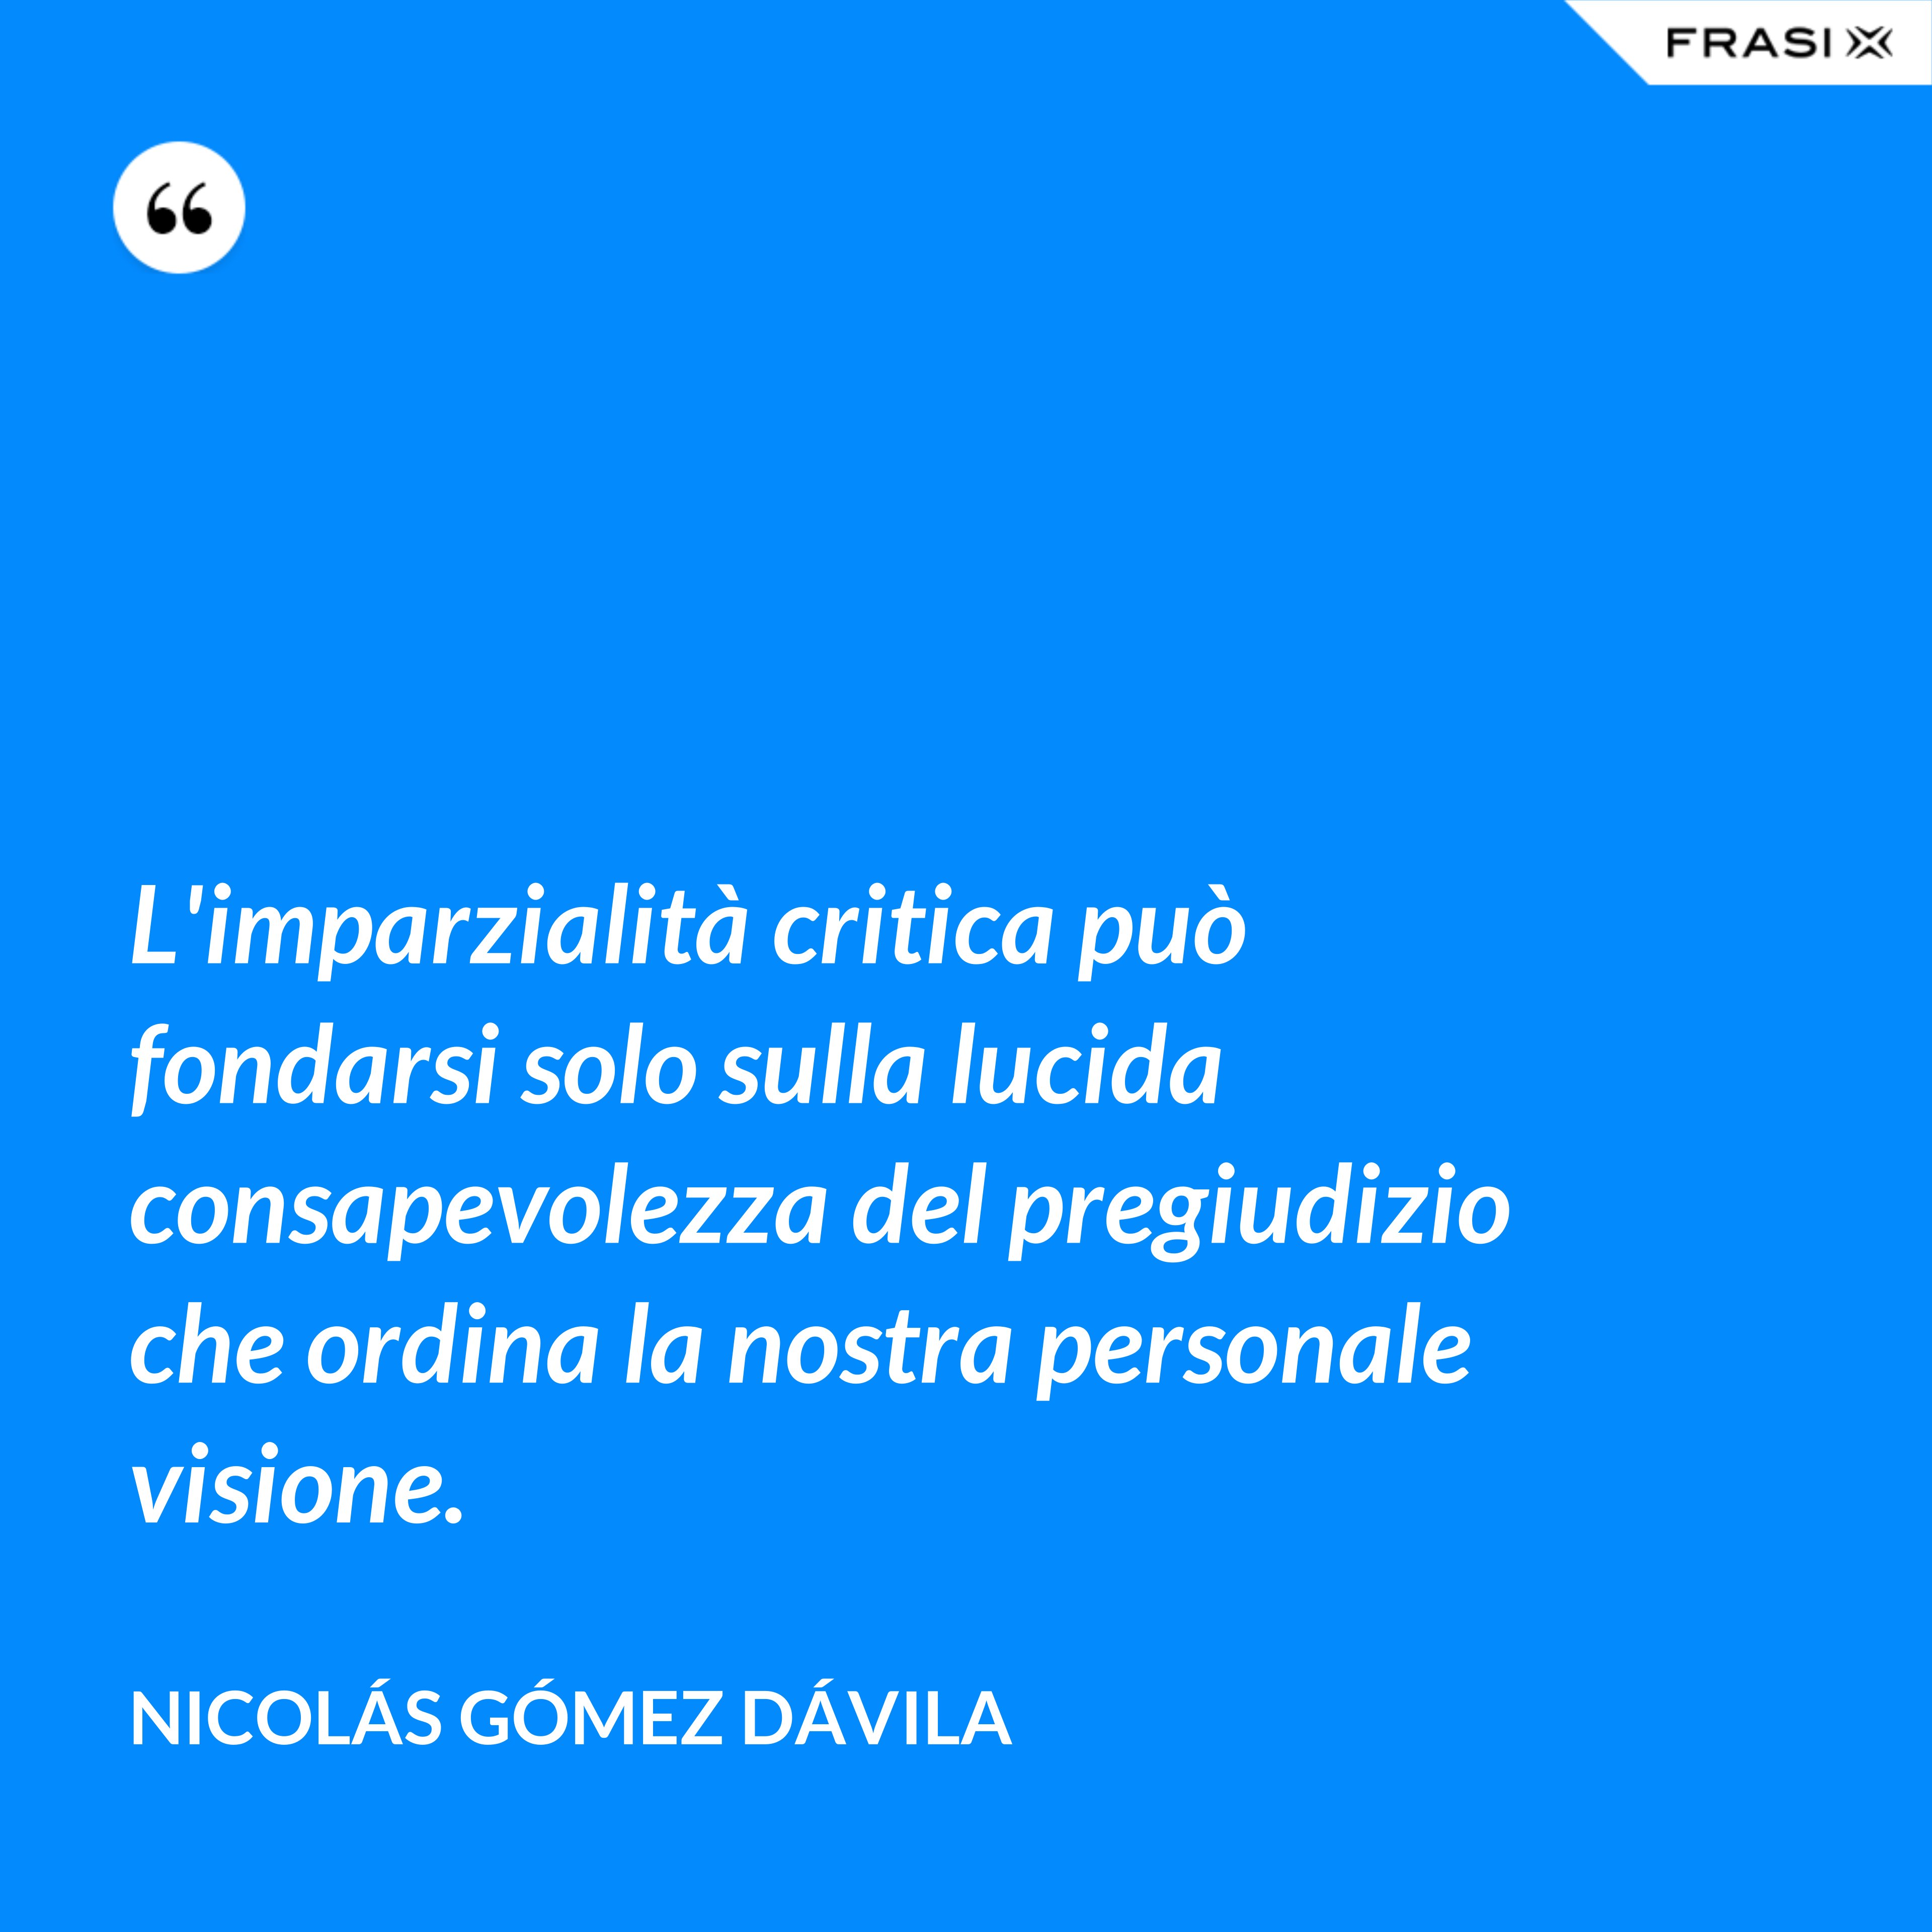 L'imparzialità critica può fondarsi solo sulla lucida consapevolezza del pregiudizio che ordina la nostra personale visione. - Nicolás Gómez Dávila